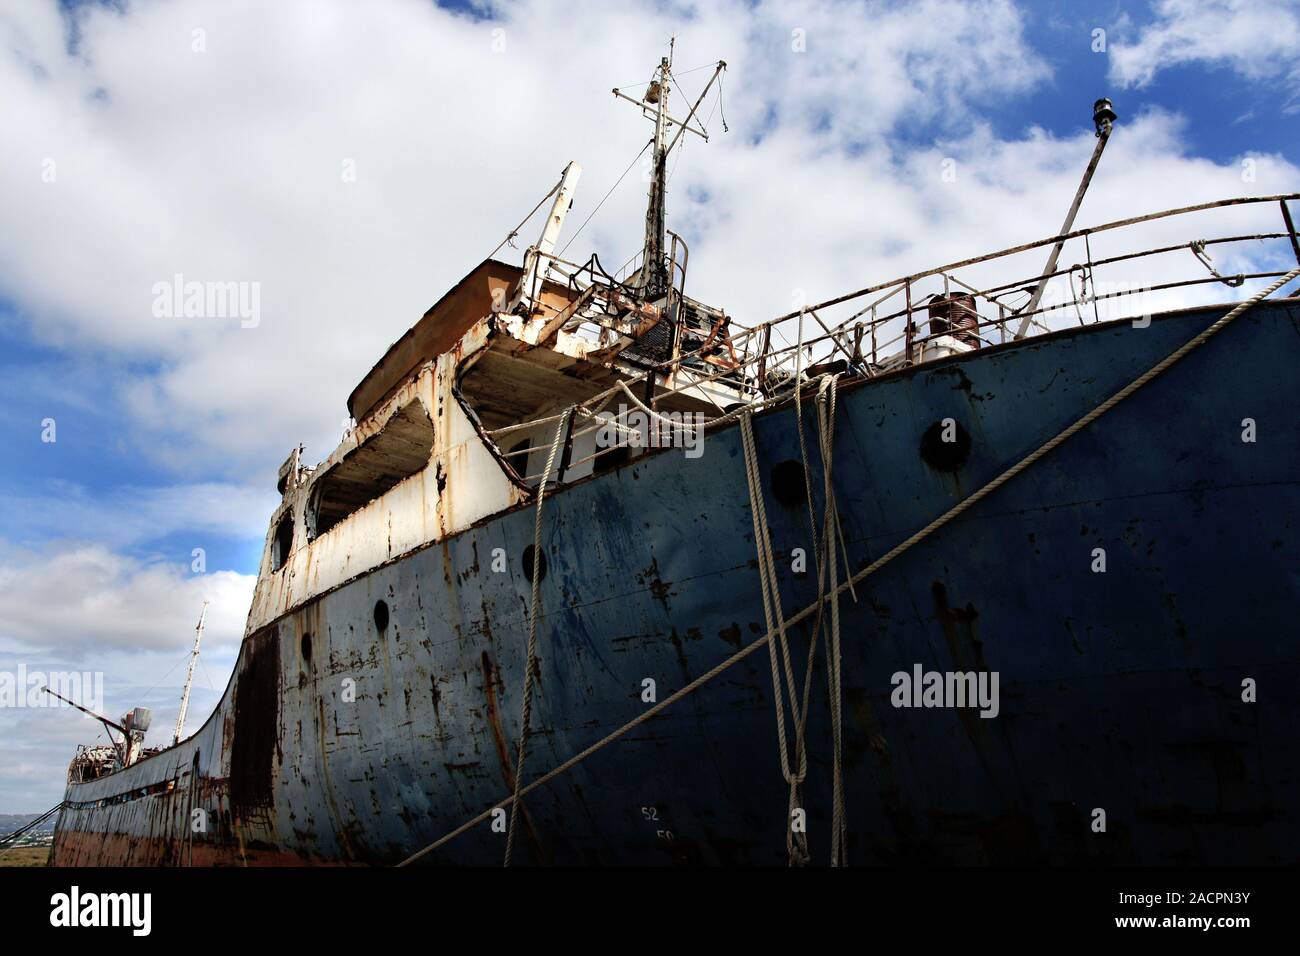 Abandoned ship Stock Photo